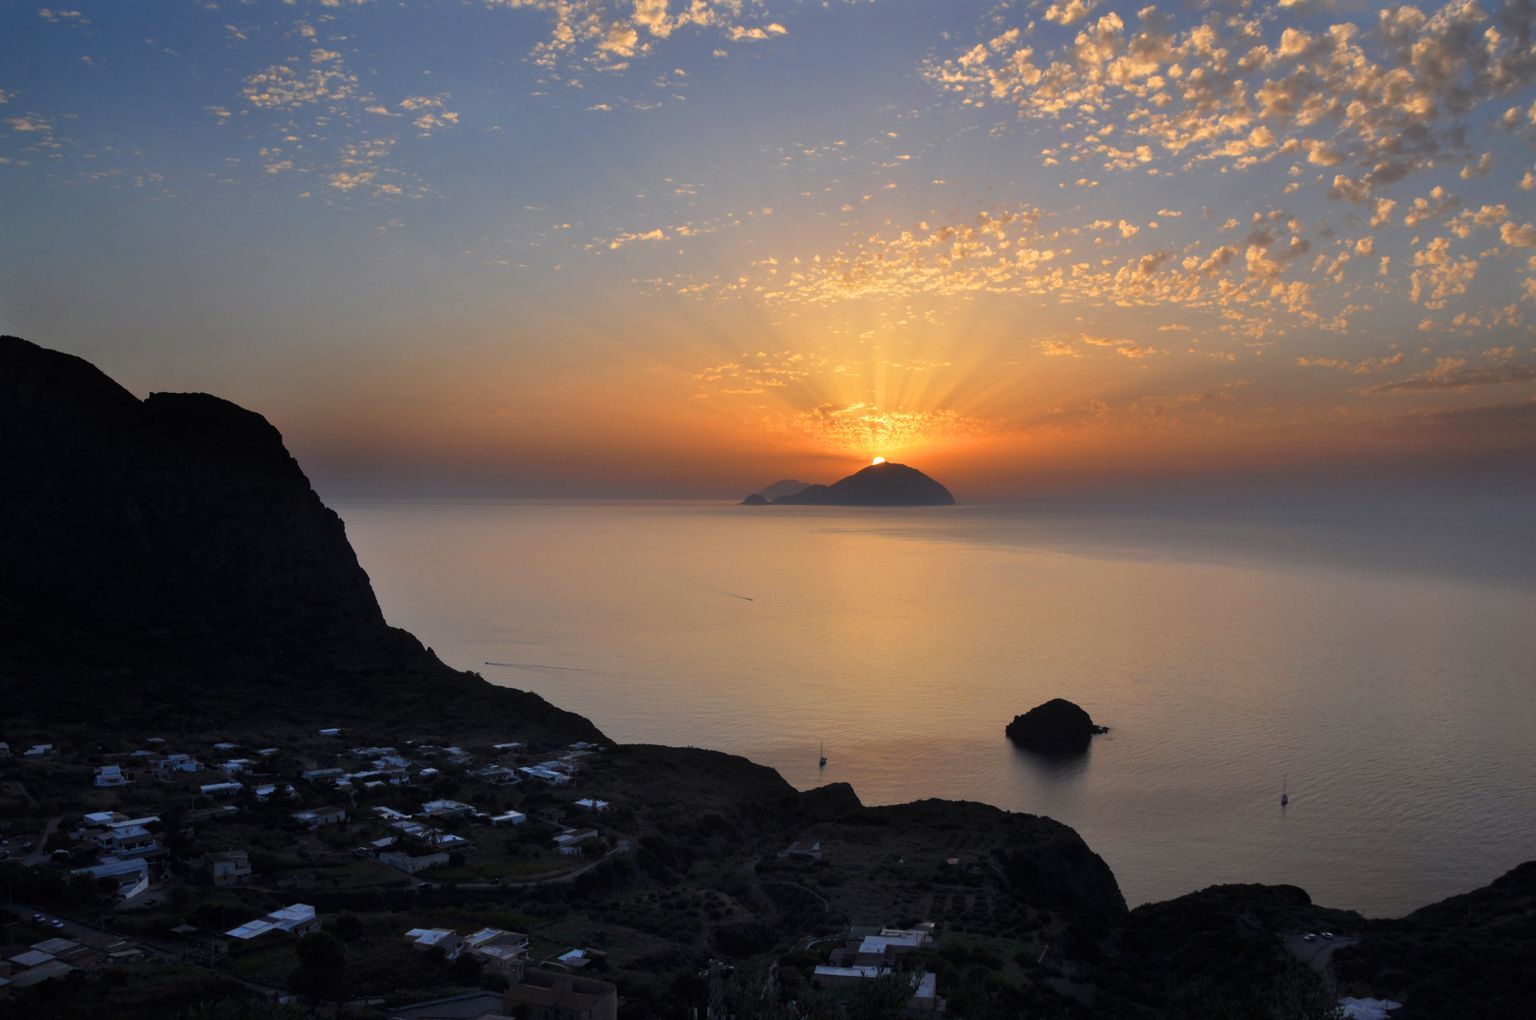 Itaalia Aeolia saarestiku saared Alicudi ja Filicudi (kaugemal) päikeseloojangul